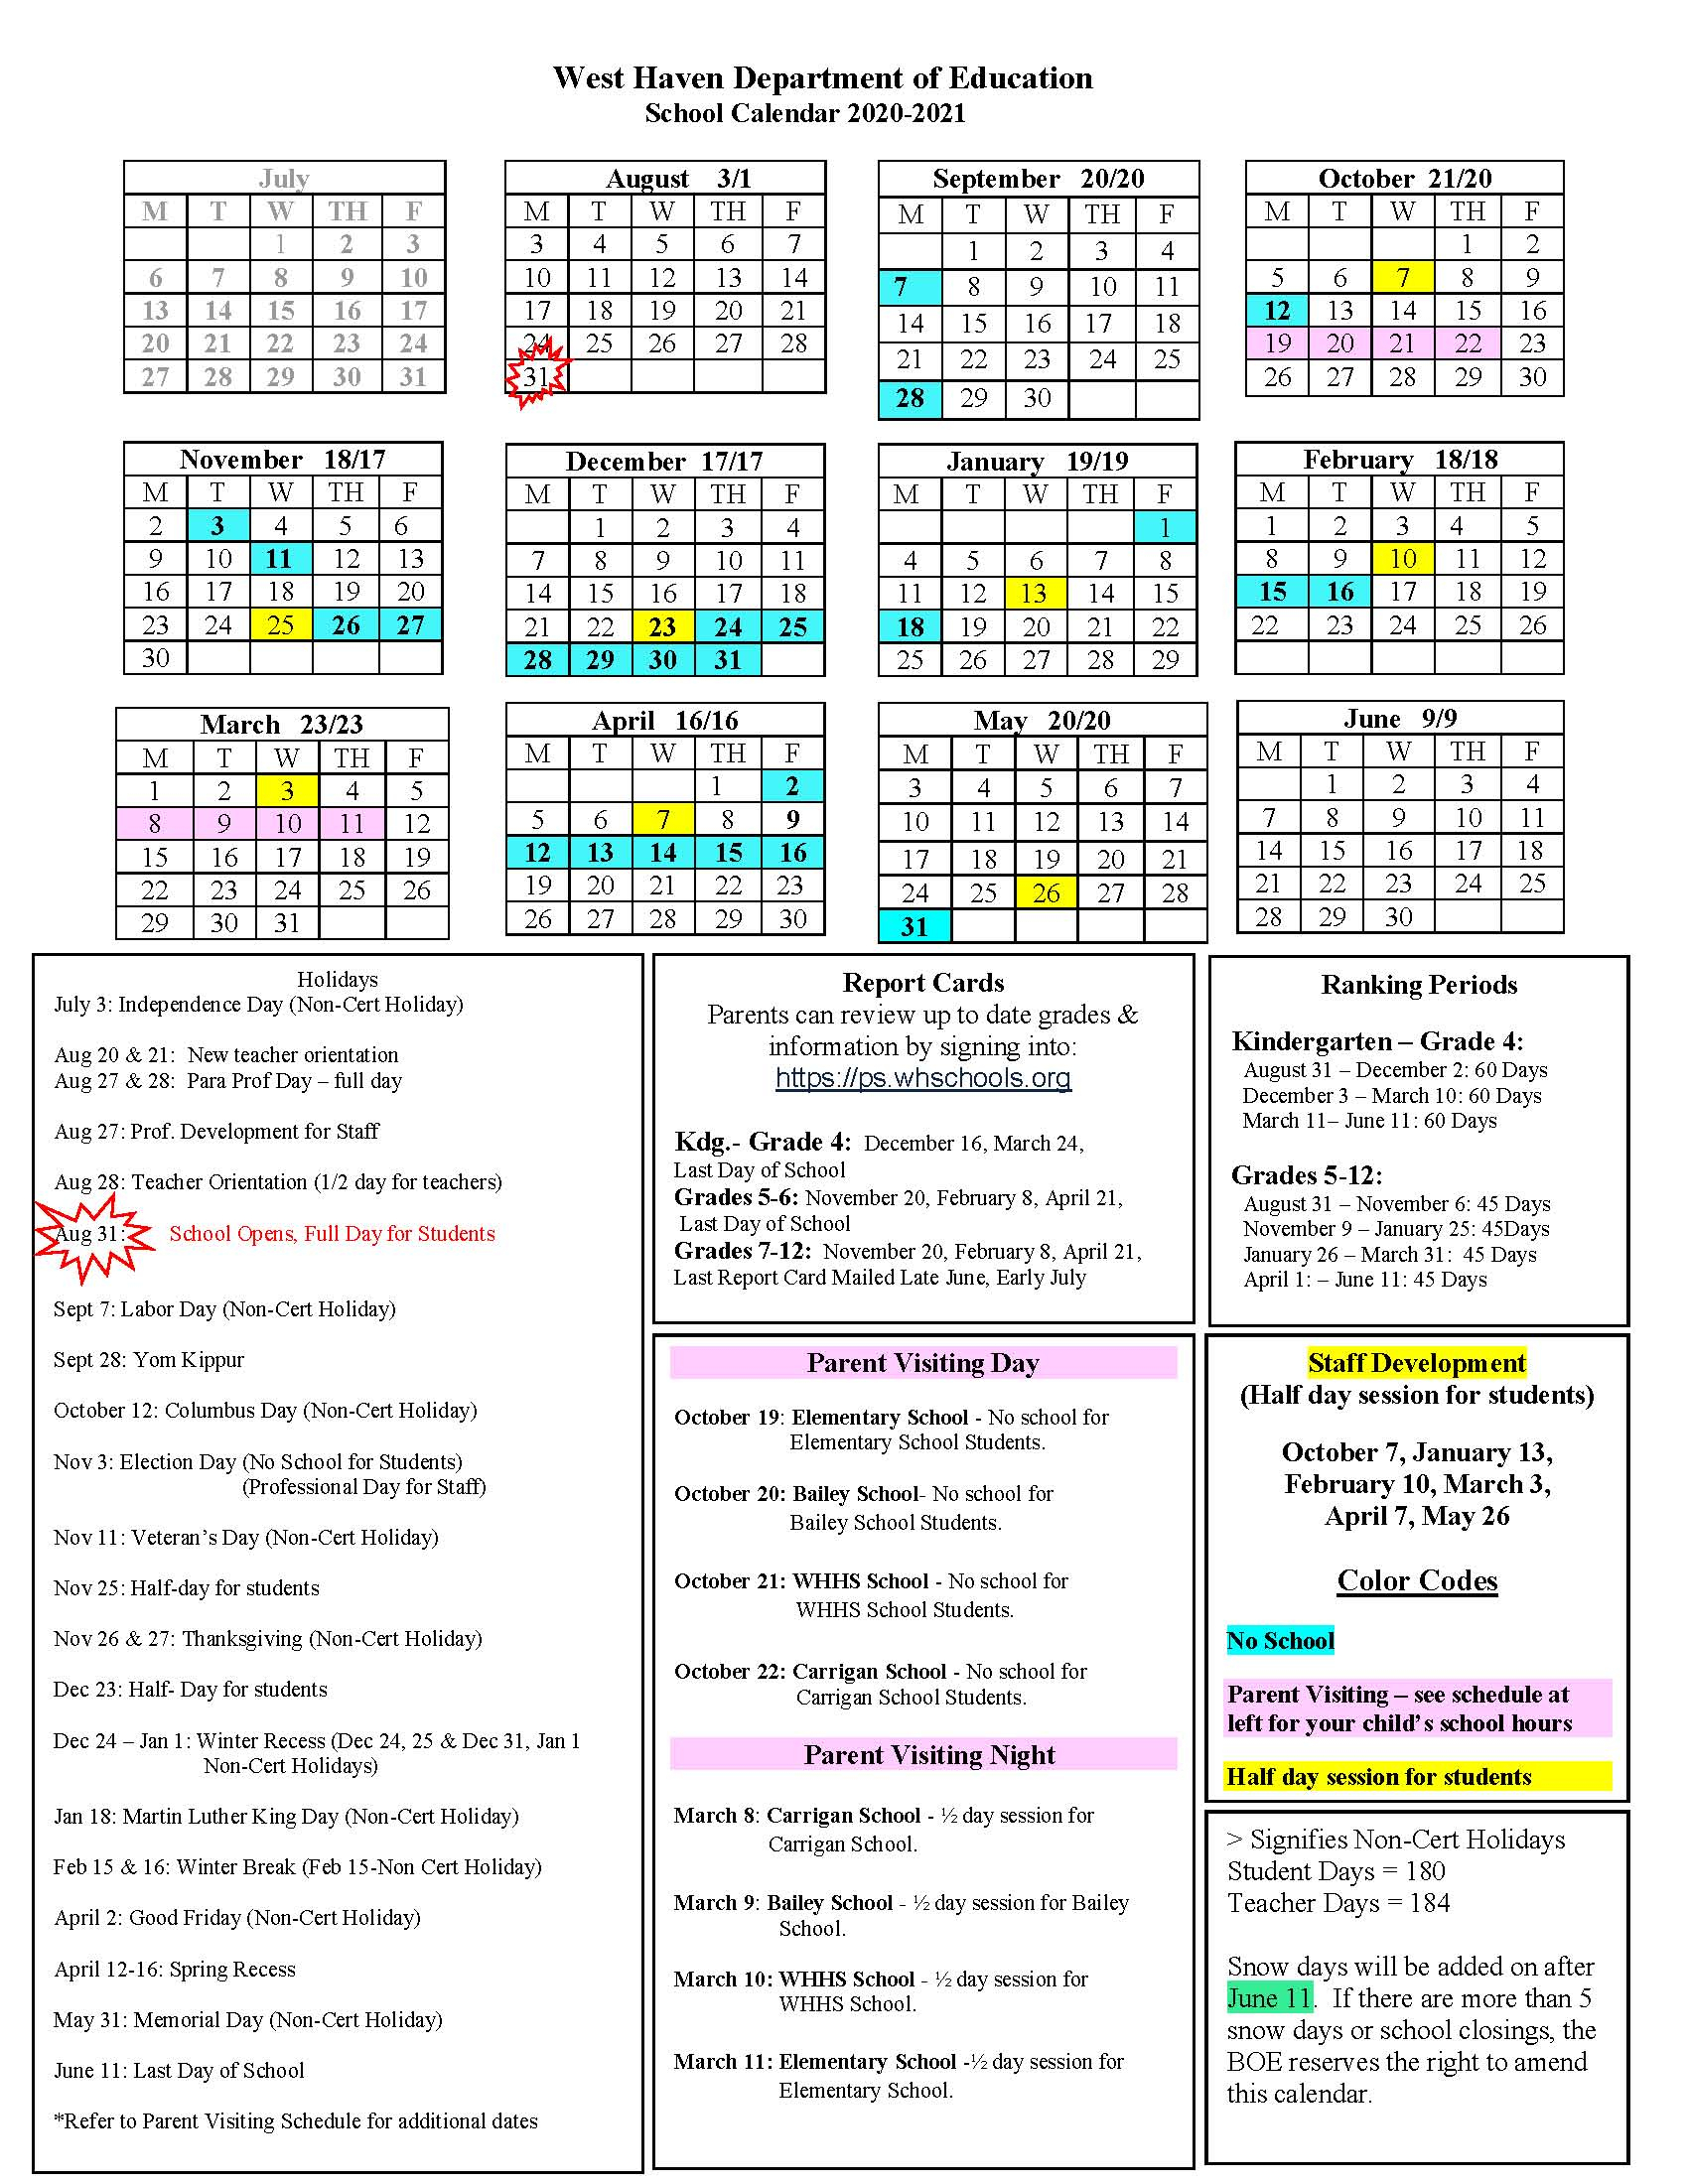 West Haven Public Schools Calendar 2022 - Schoolcalendars.net